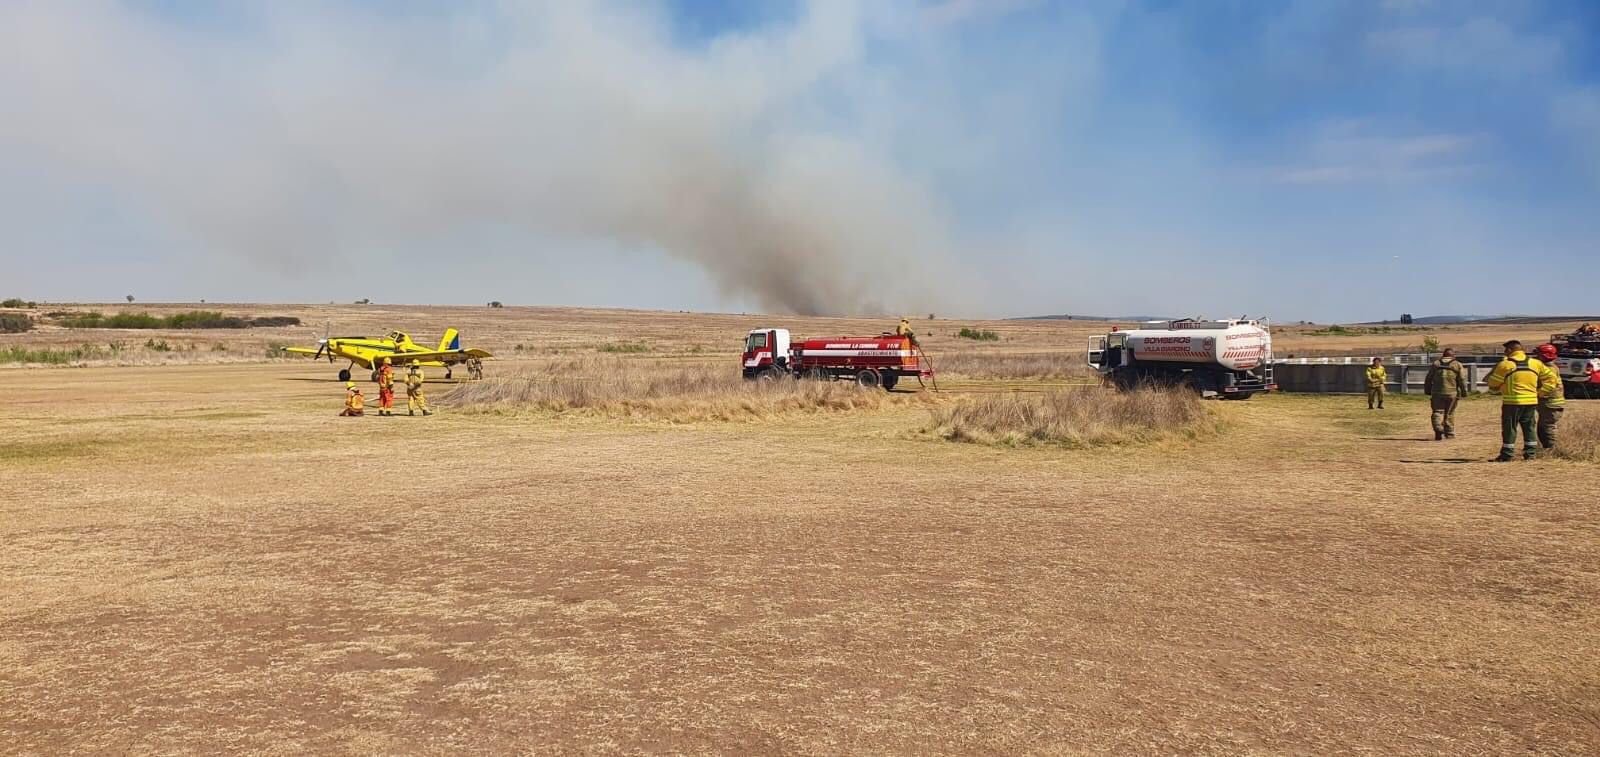 Sigue el combate del fuego en Cuchi Corral: Bomberos y aviones luchan para sofocar las llamas